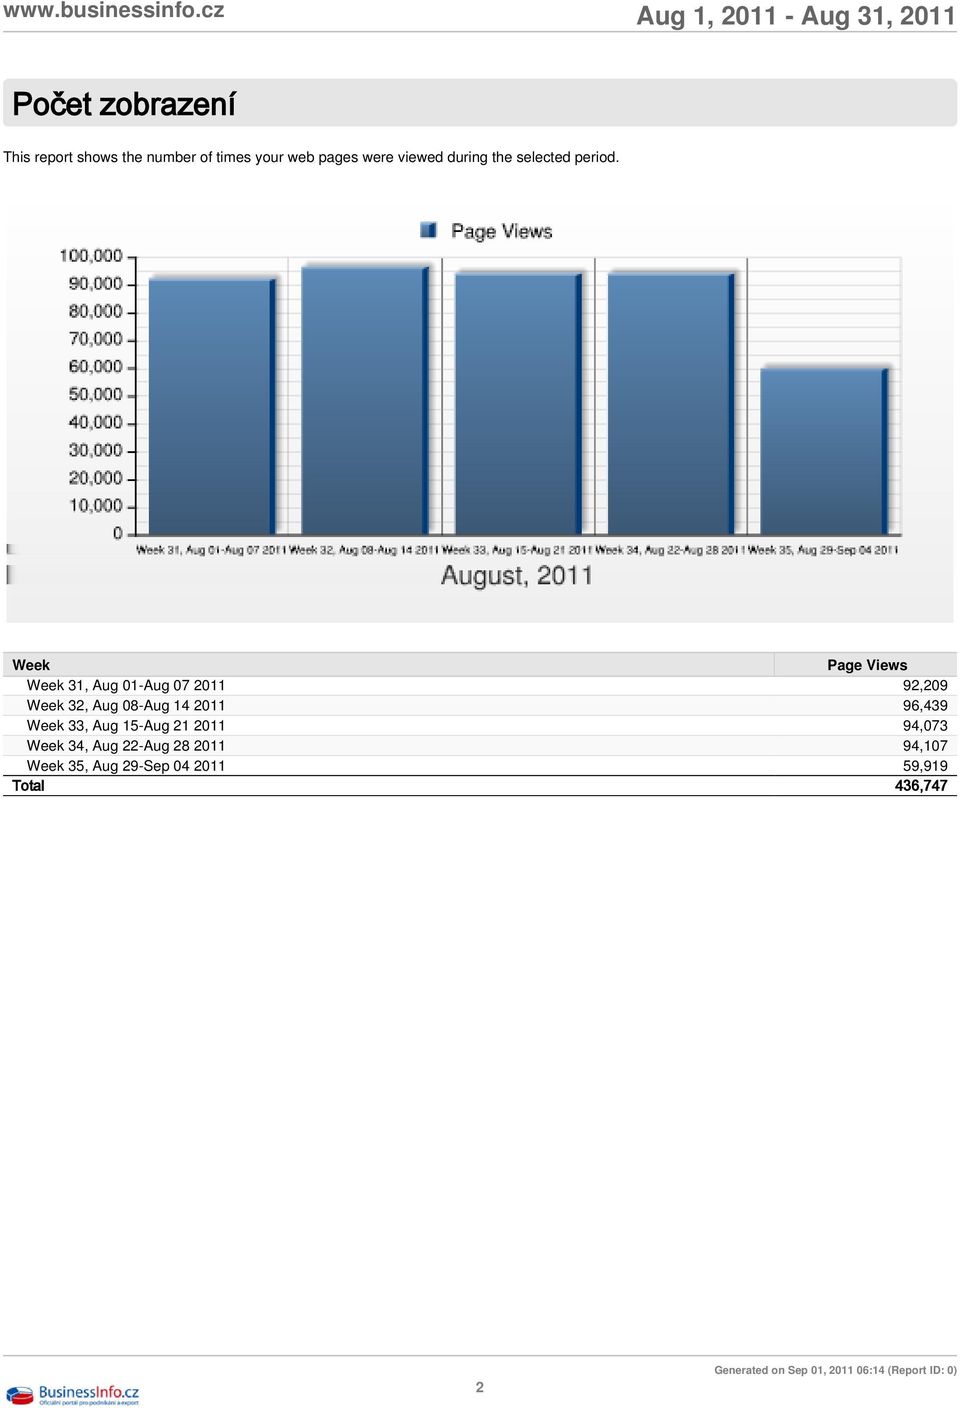 Week Page Views Week 31, Aug 01-Aug 07 2011 92,209 Week 32, Aug 08-Aug 14 2011